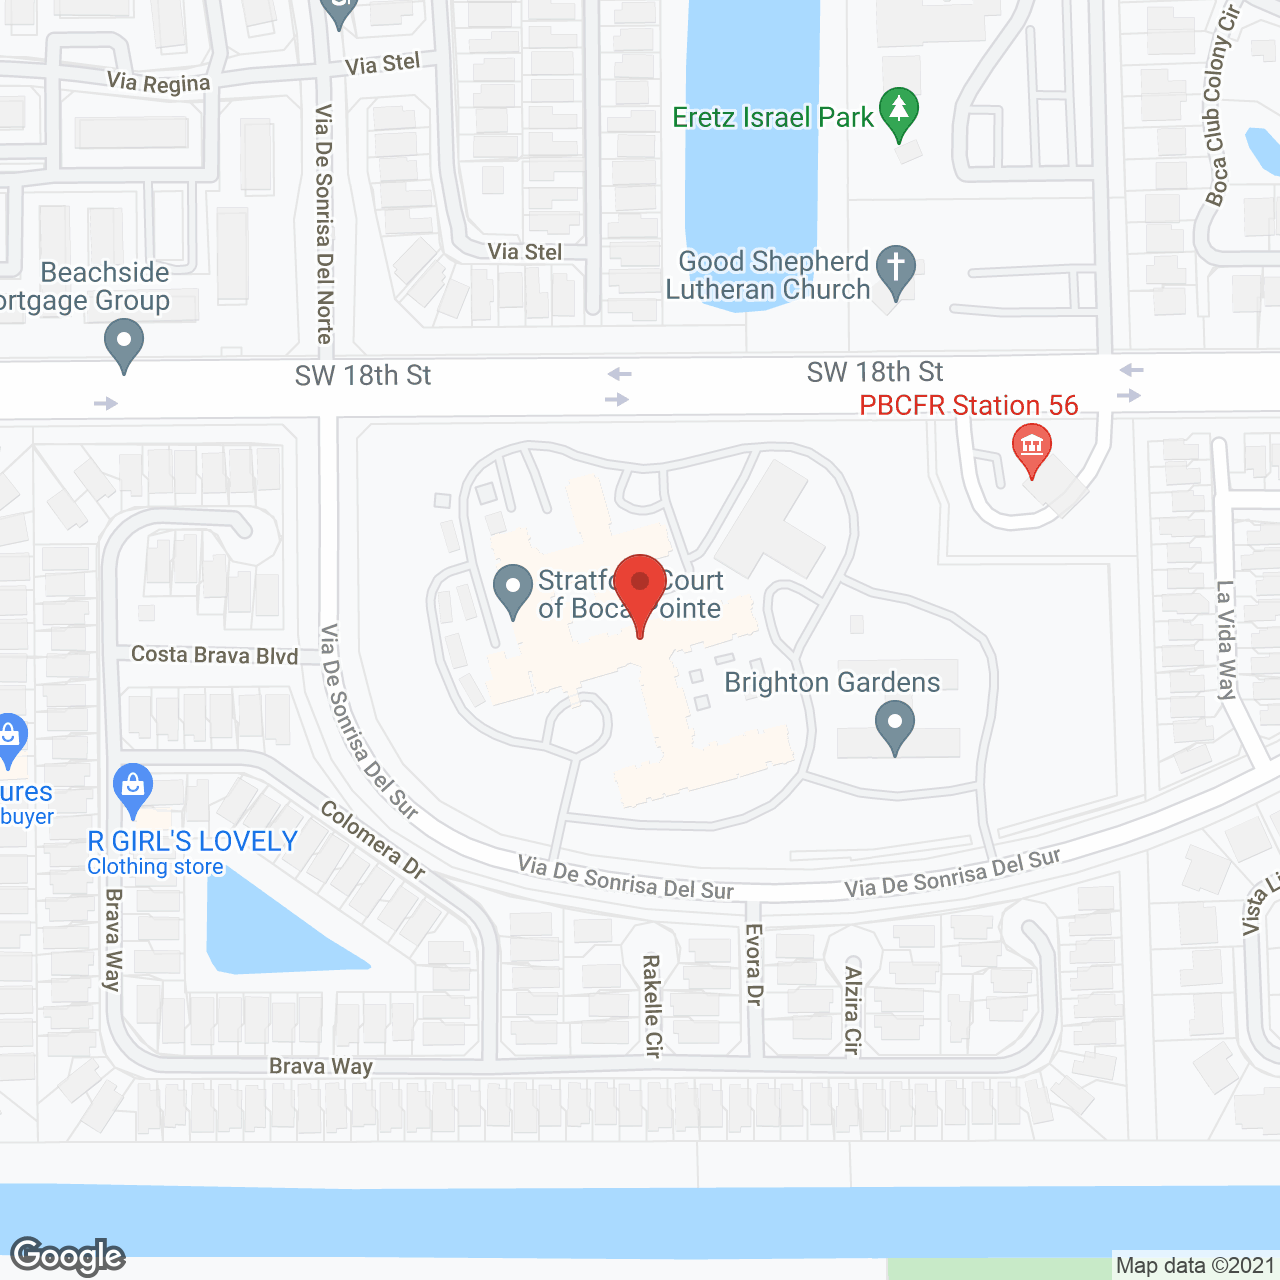 Stratford Court of Boca Pointe in google map